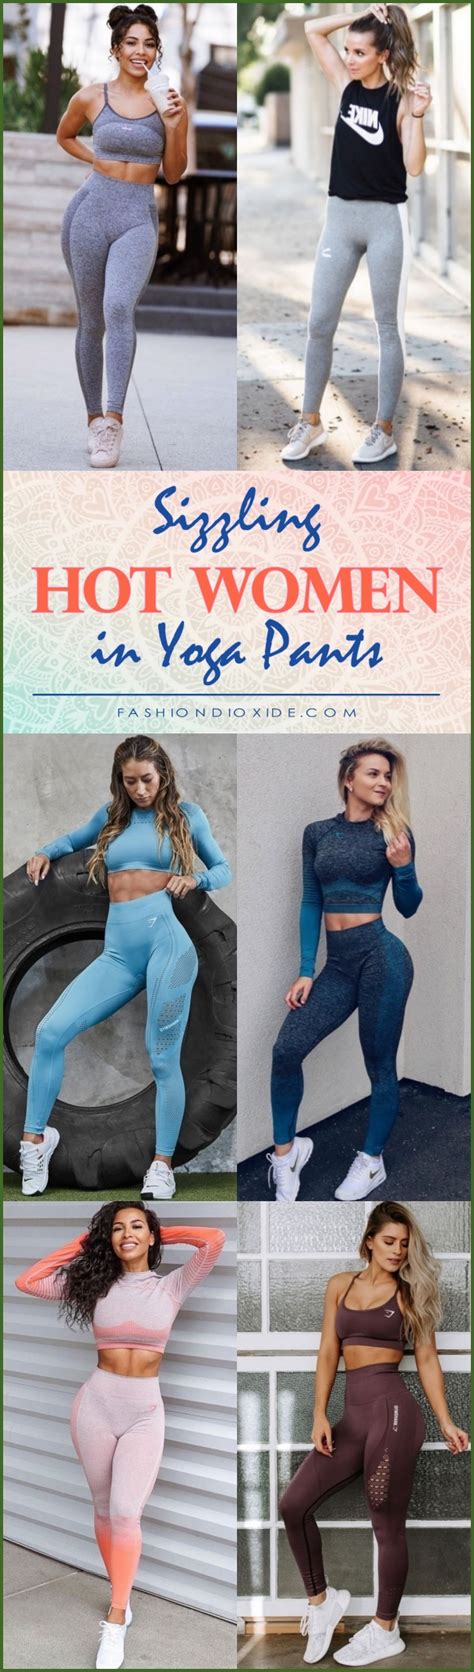 Hot Girls Yoga Pants Porn Sex Photos